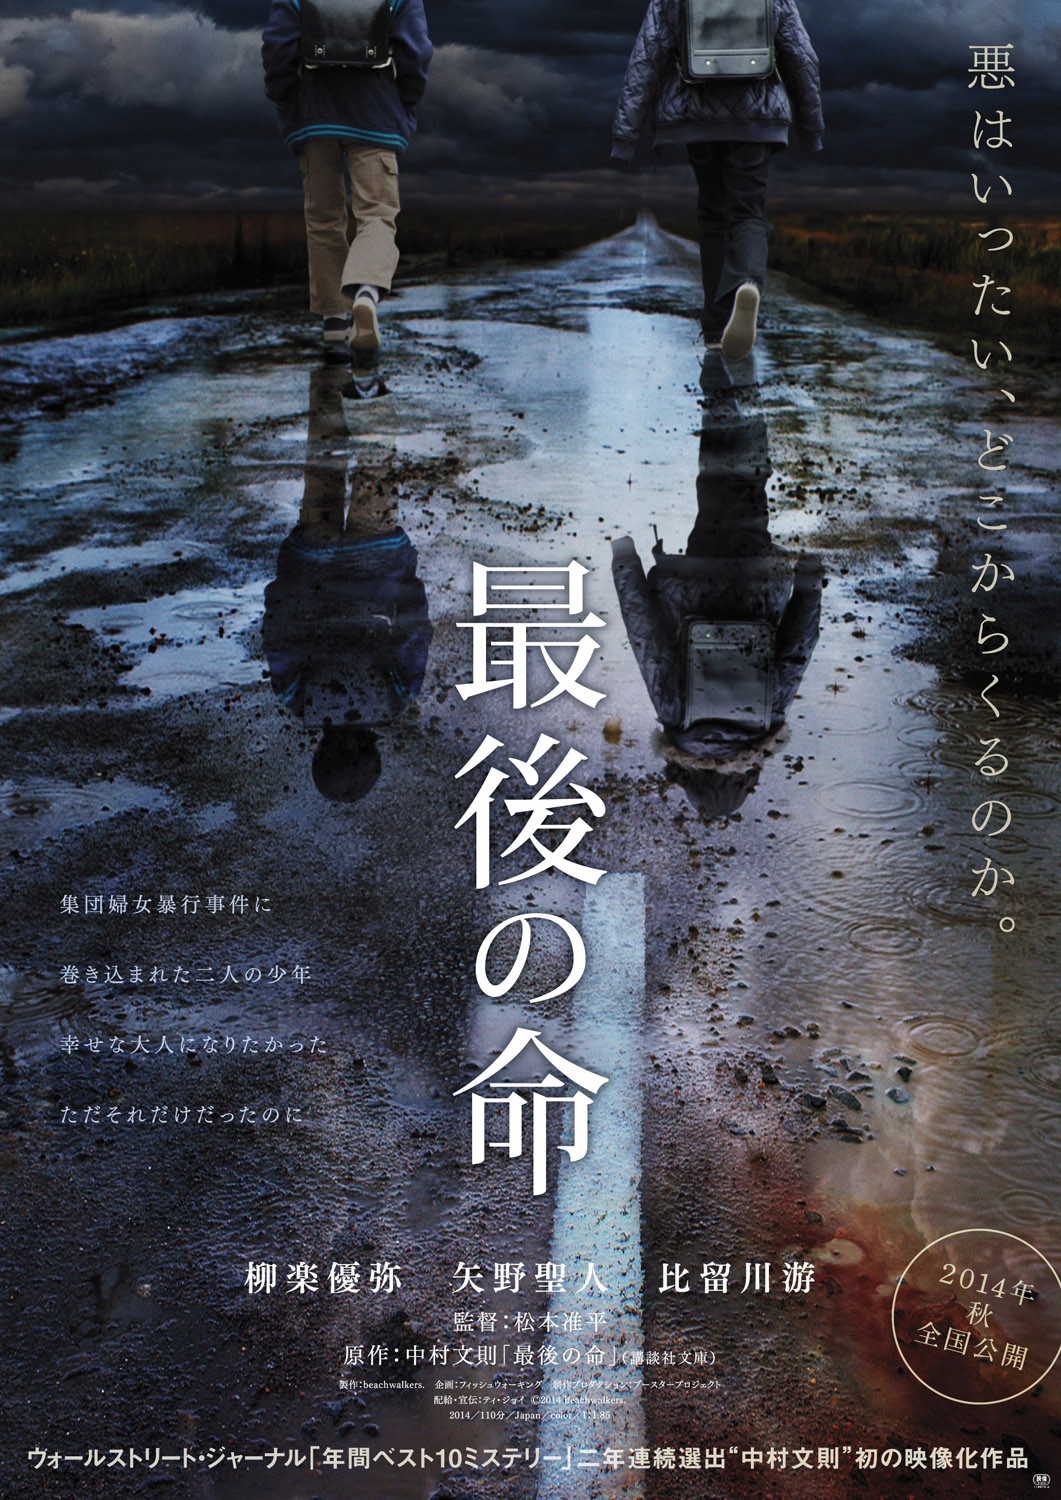 Extra Large Movie Poster Image for Saigo no Inochi (#1 of 2)